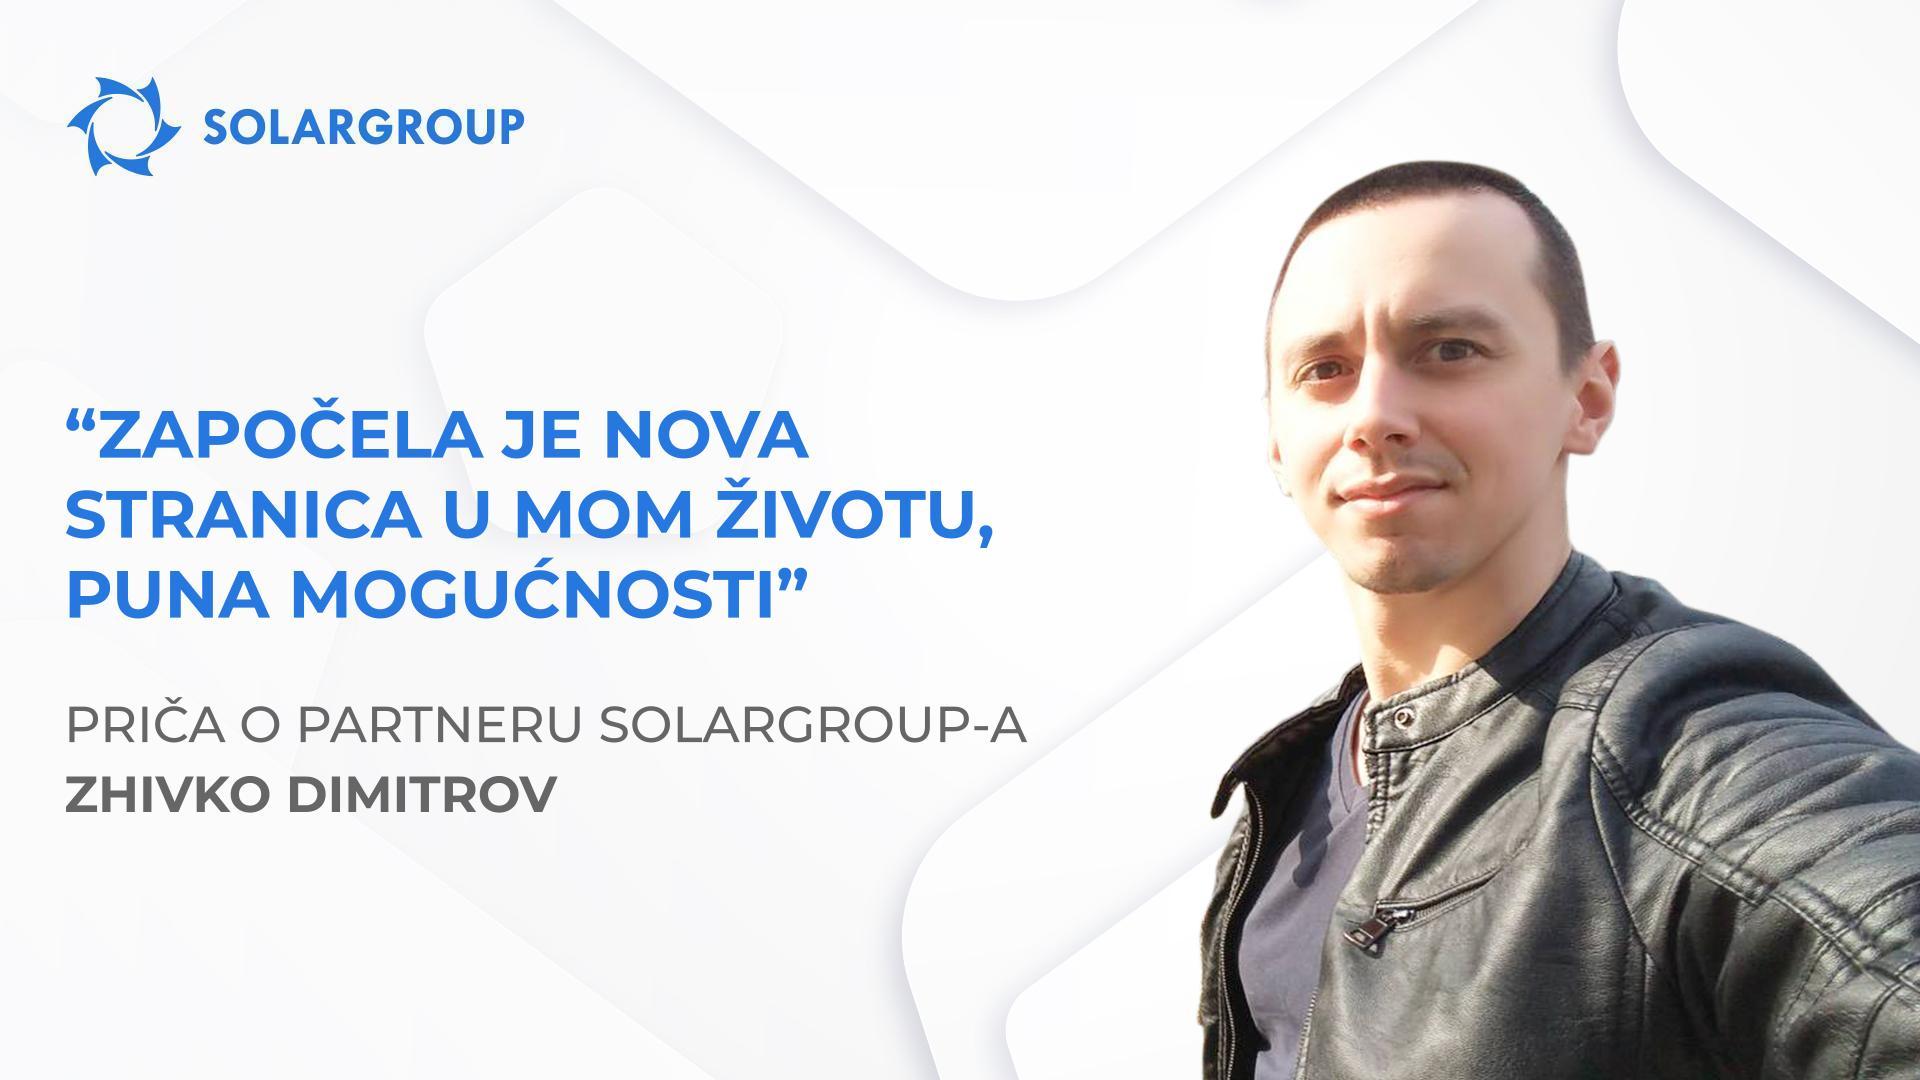 SOLARGROUP je promijenio moj pogled i način života | Priča partnera - Zhivko Dimitrov